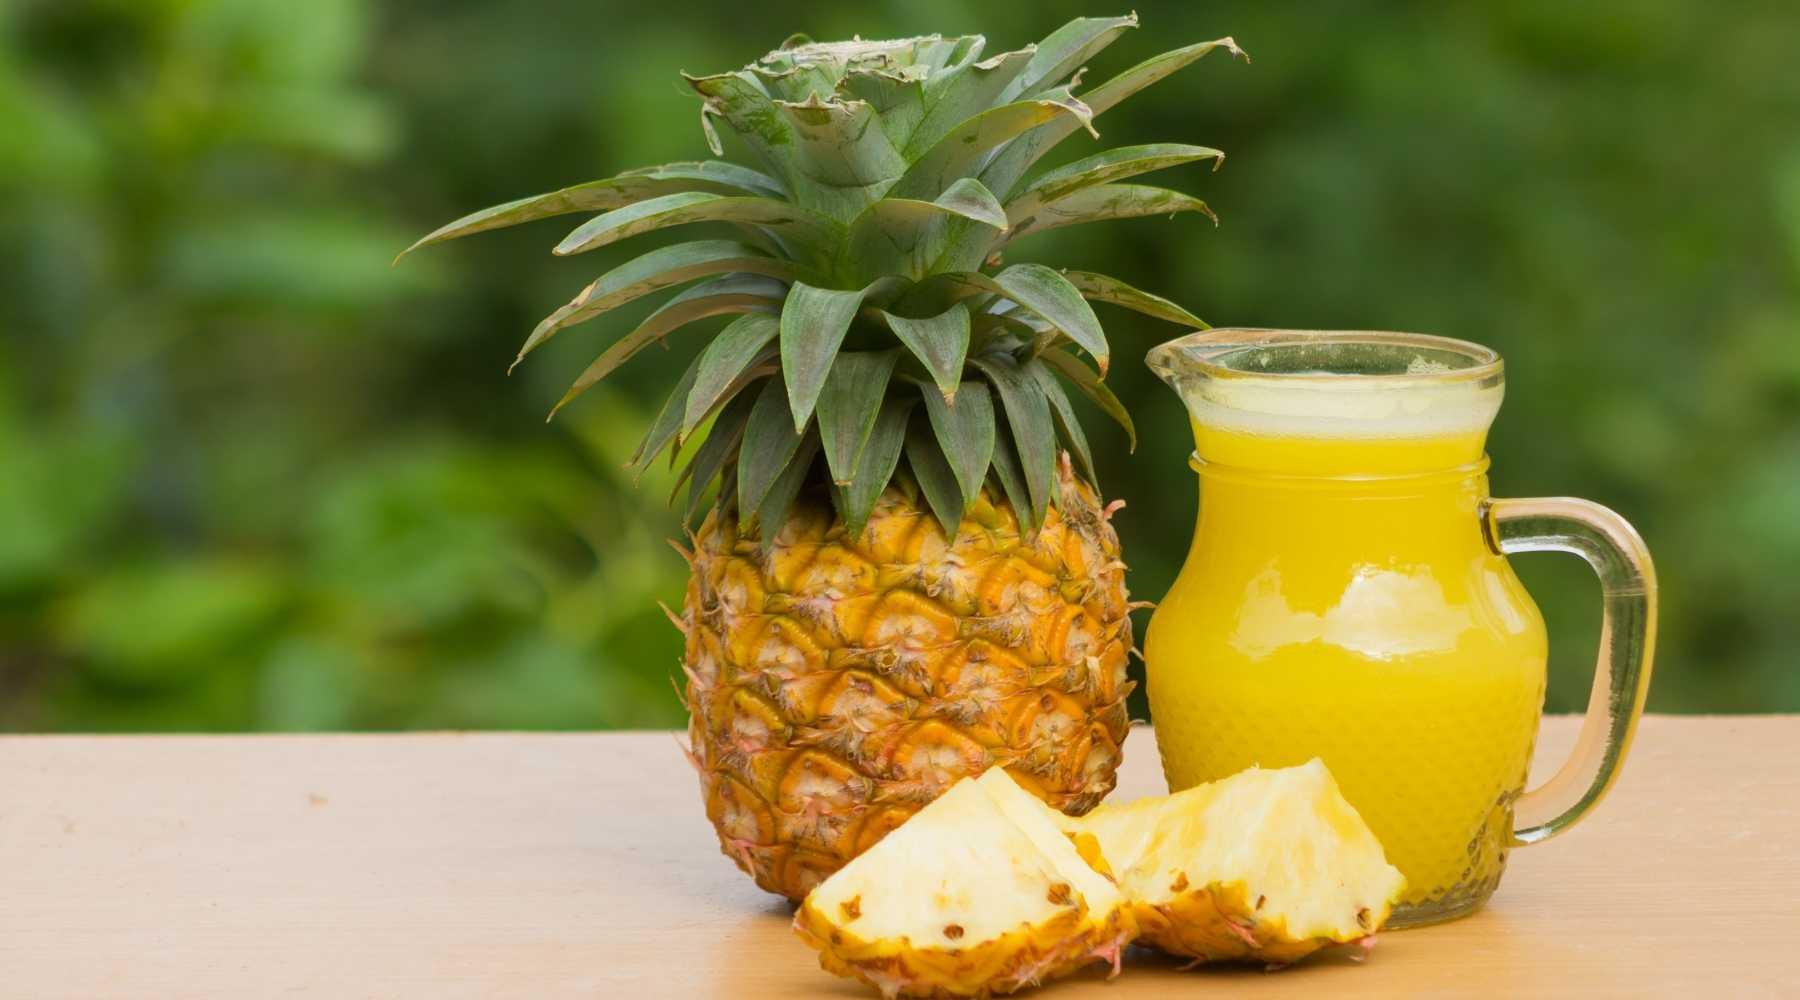 Tasty Pineapple Juice Recipe To Improve Sleep